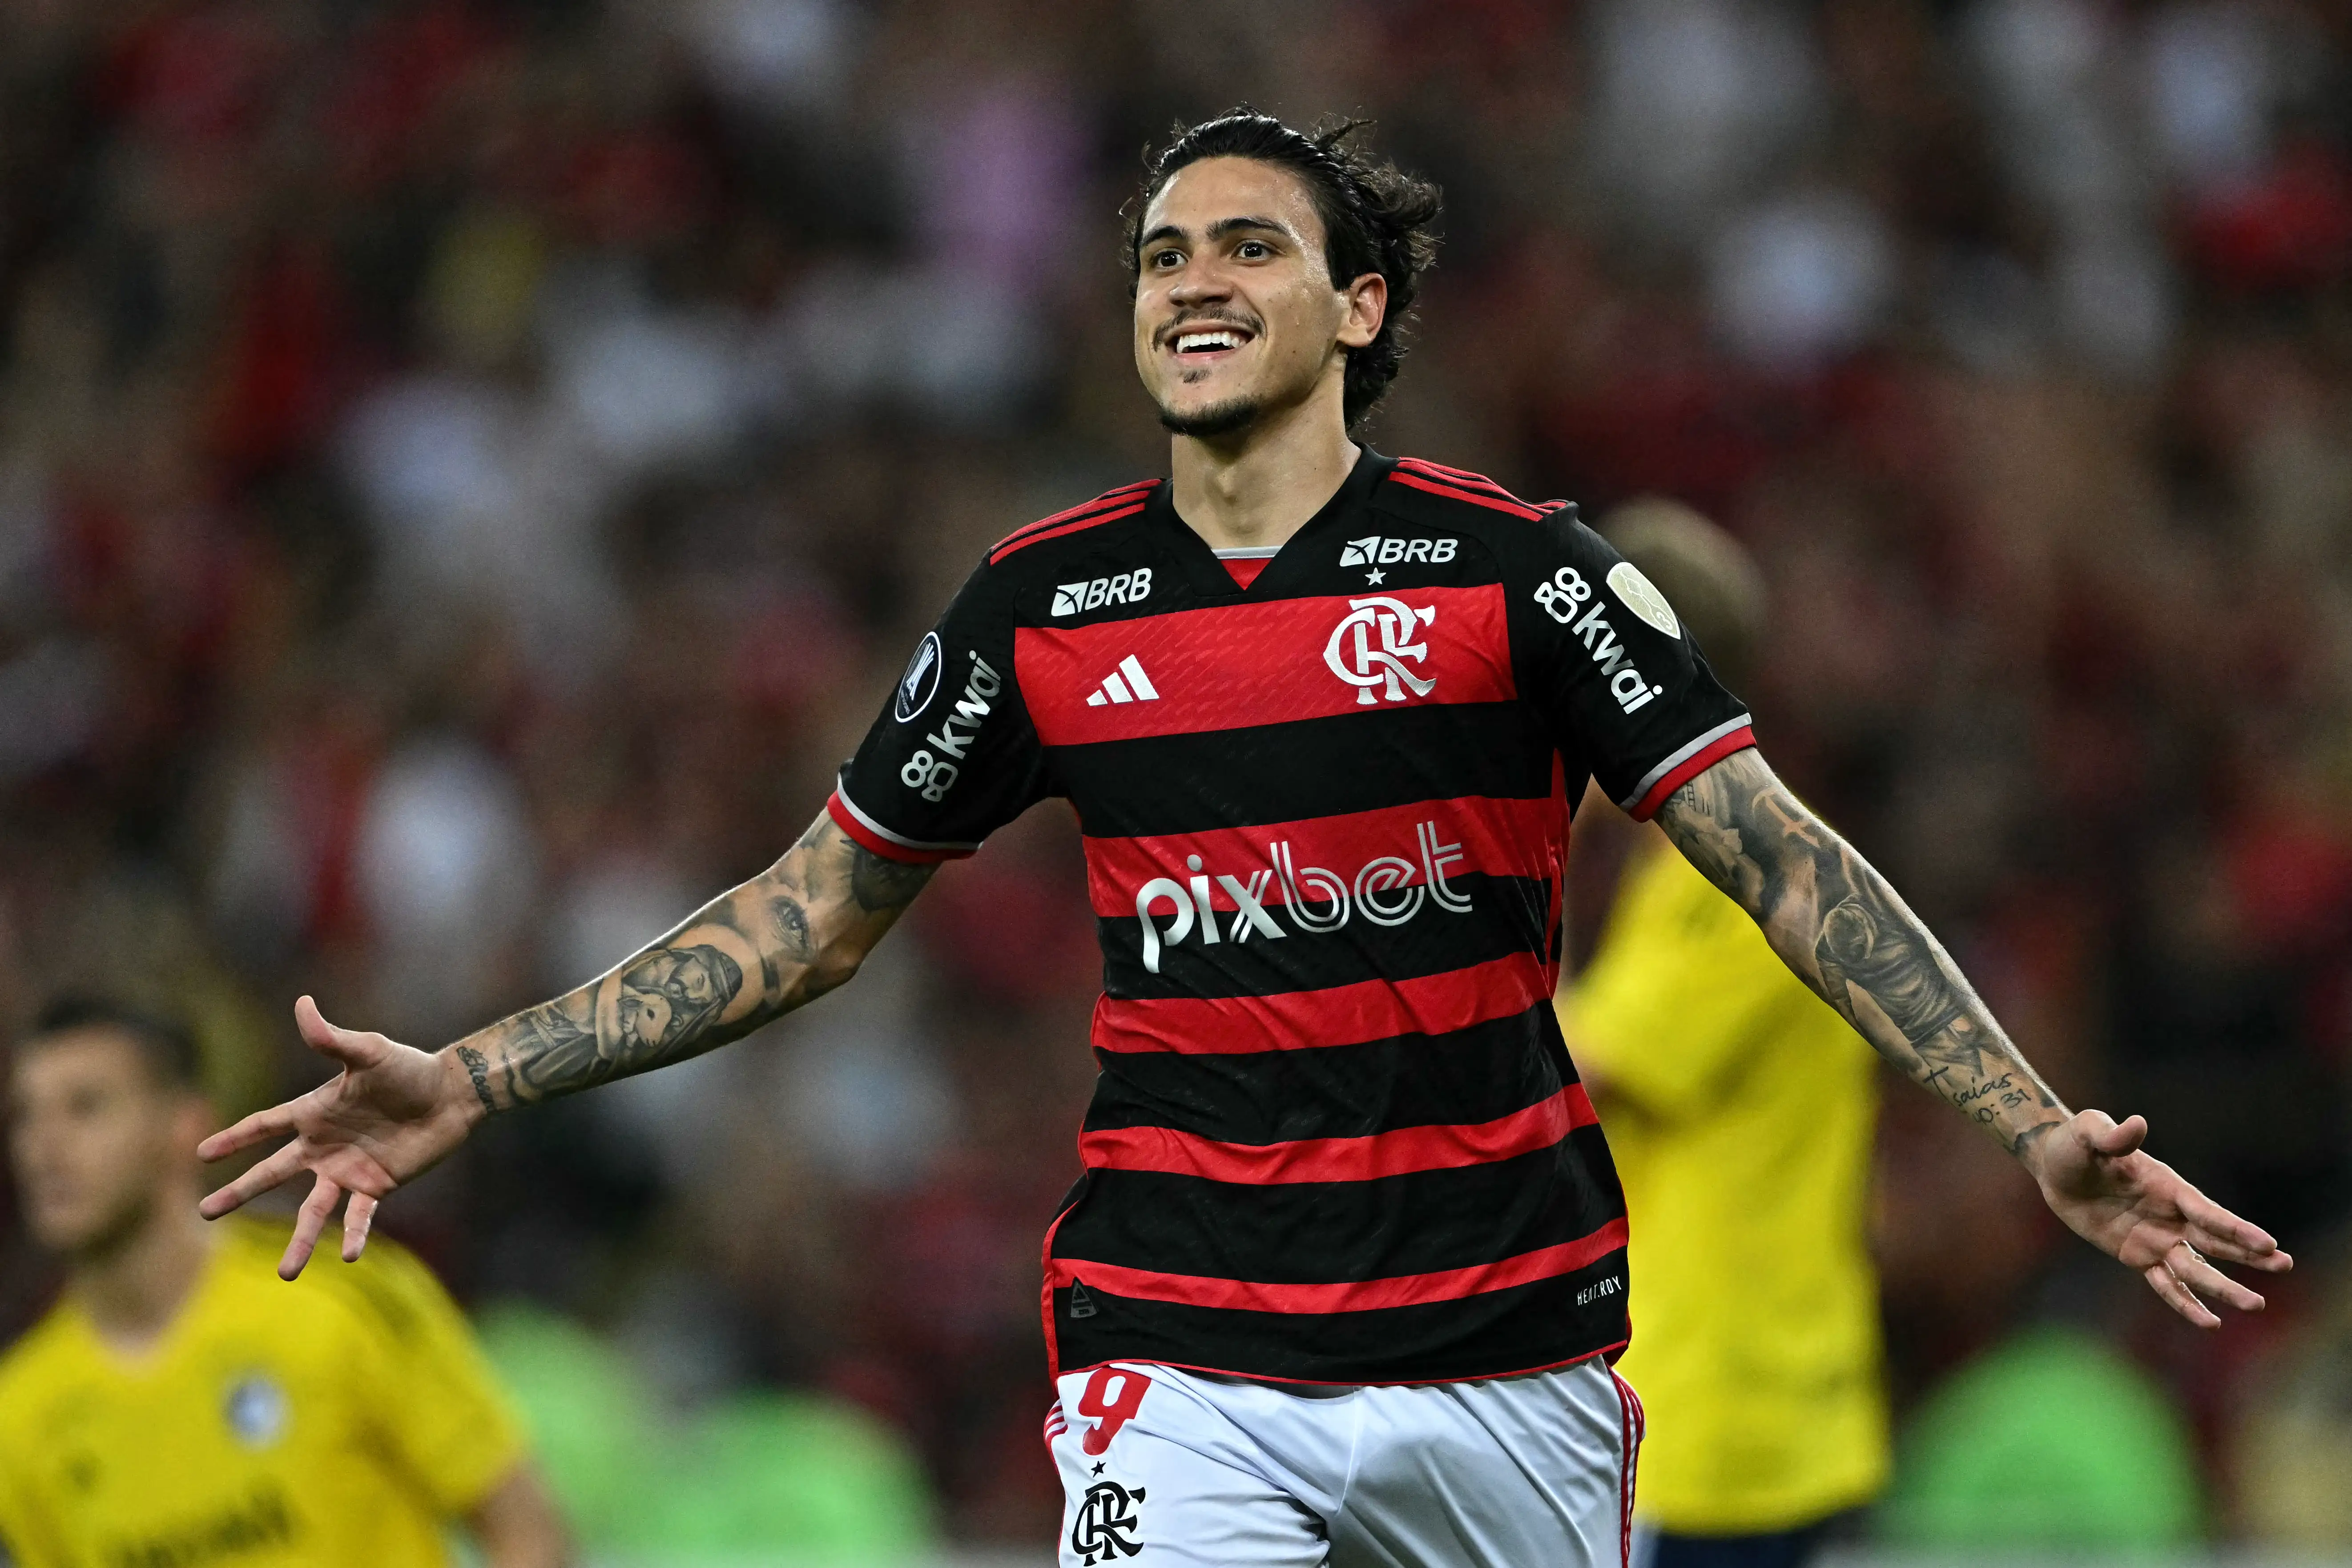 Imagem do atacante Pedro, do Flamengo, l&iacute;der do Brasileir&atilde;o S&eacute;rie A